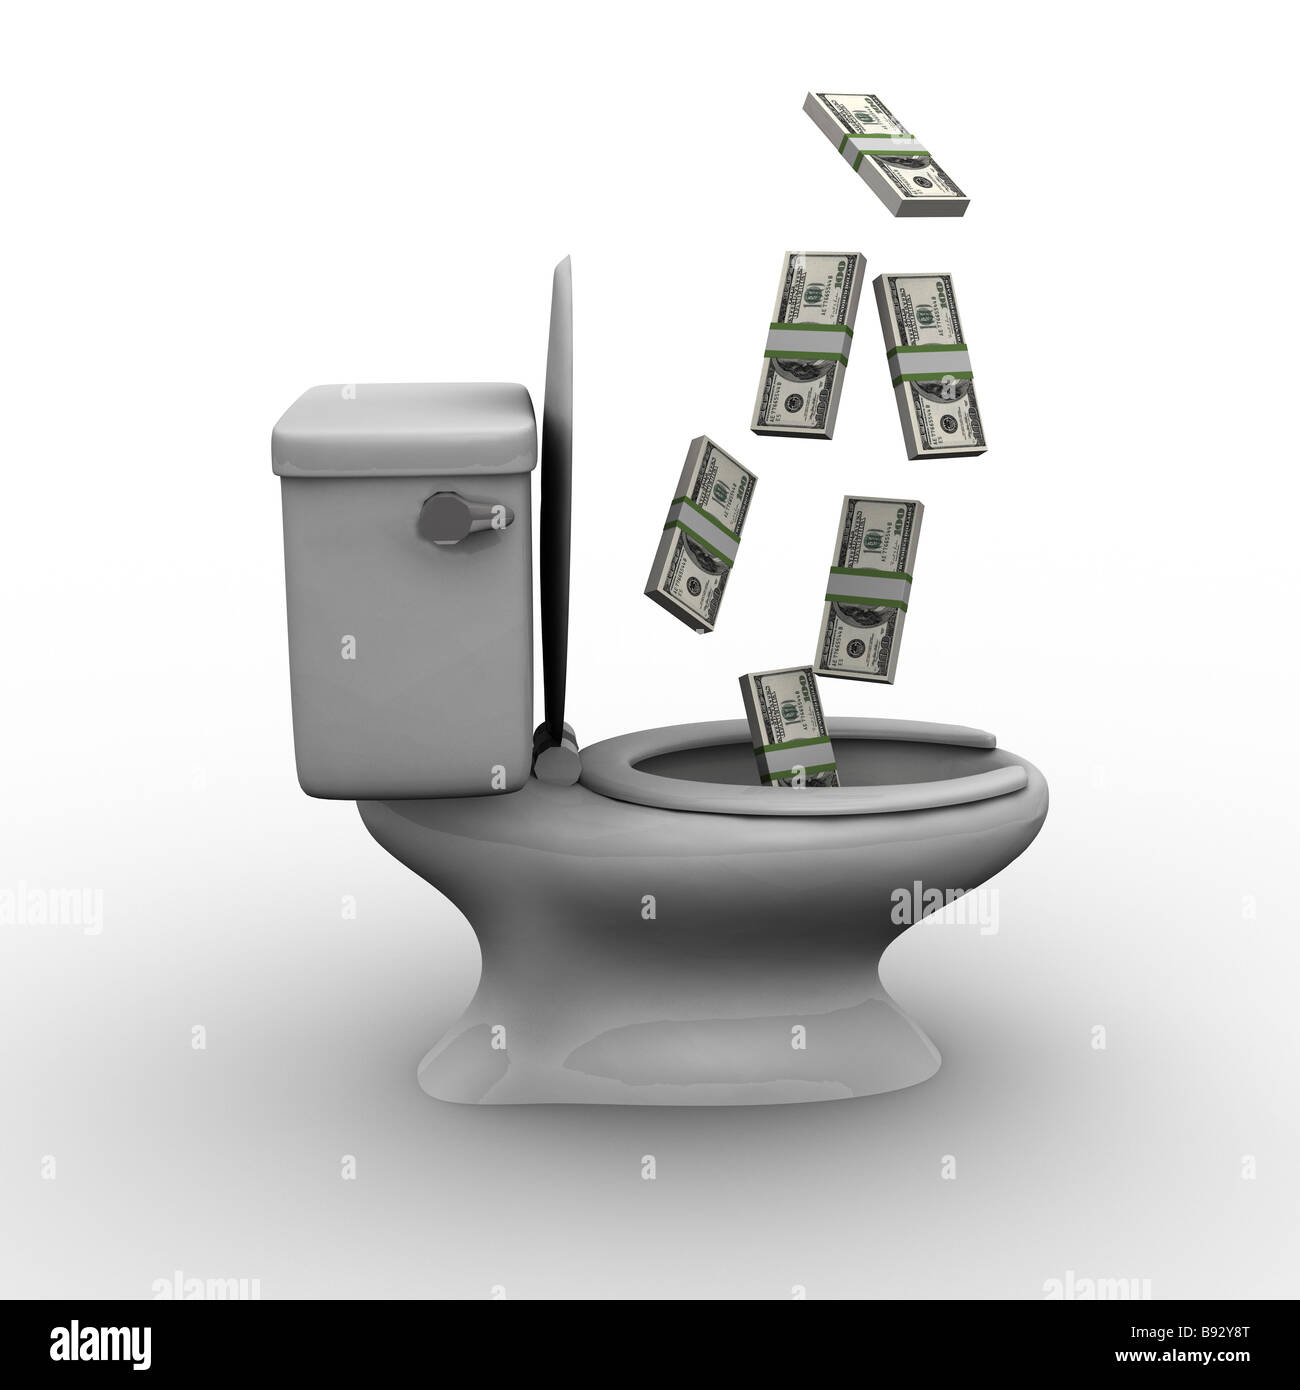 Throwing Money Down the Toilet Stock Photo